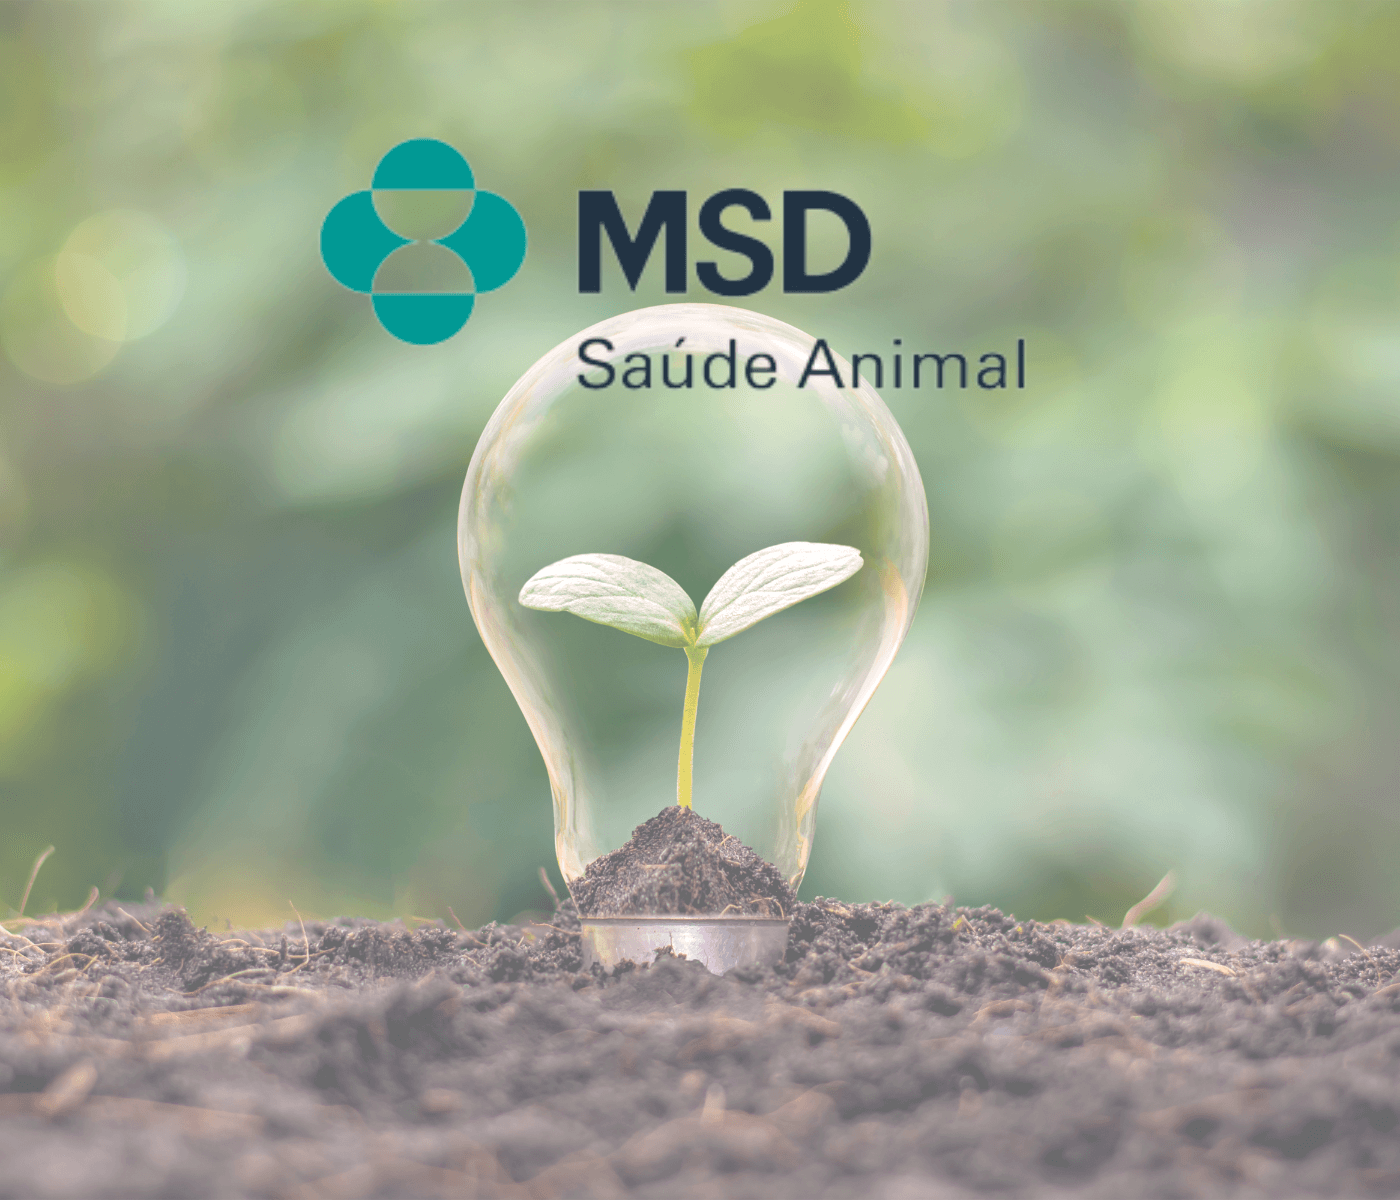 Consciência sustentável é foco da MSD Saúde Animal